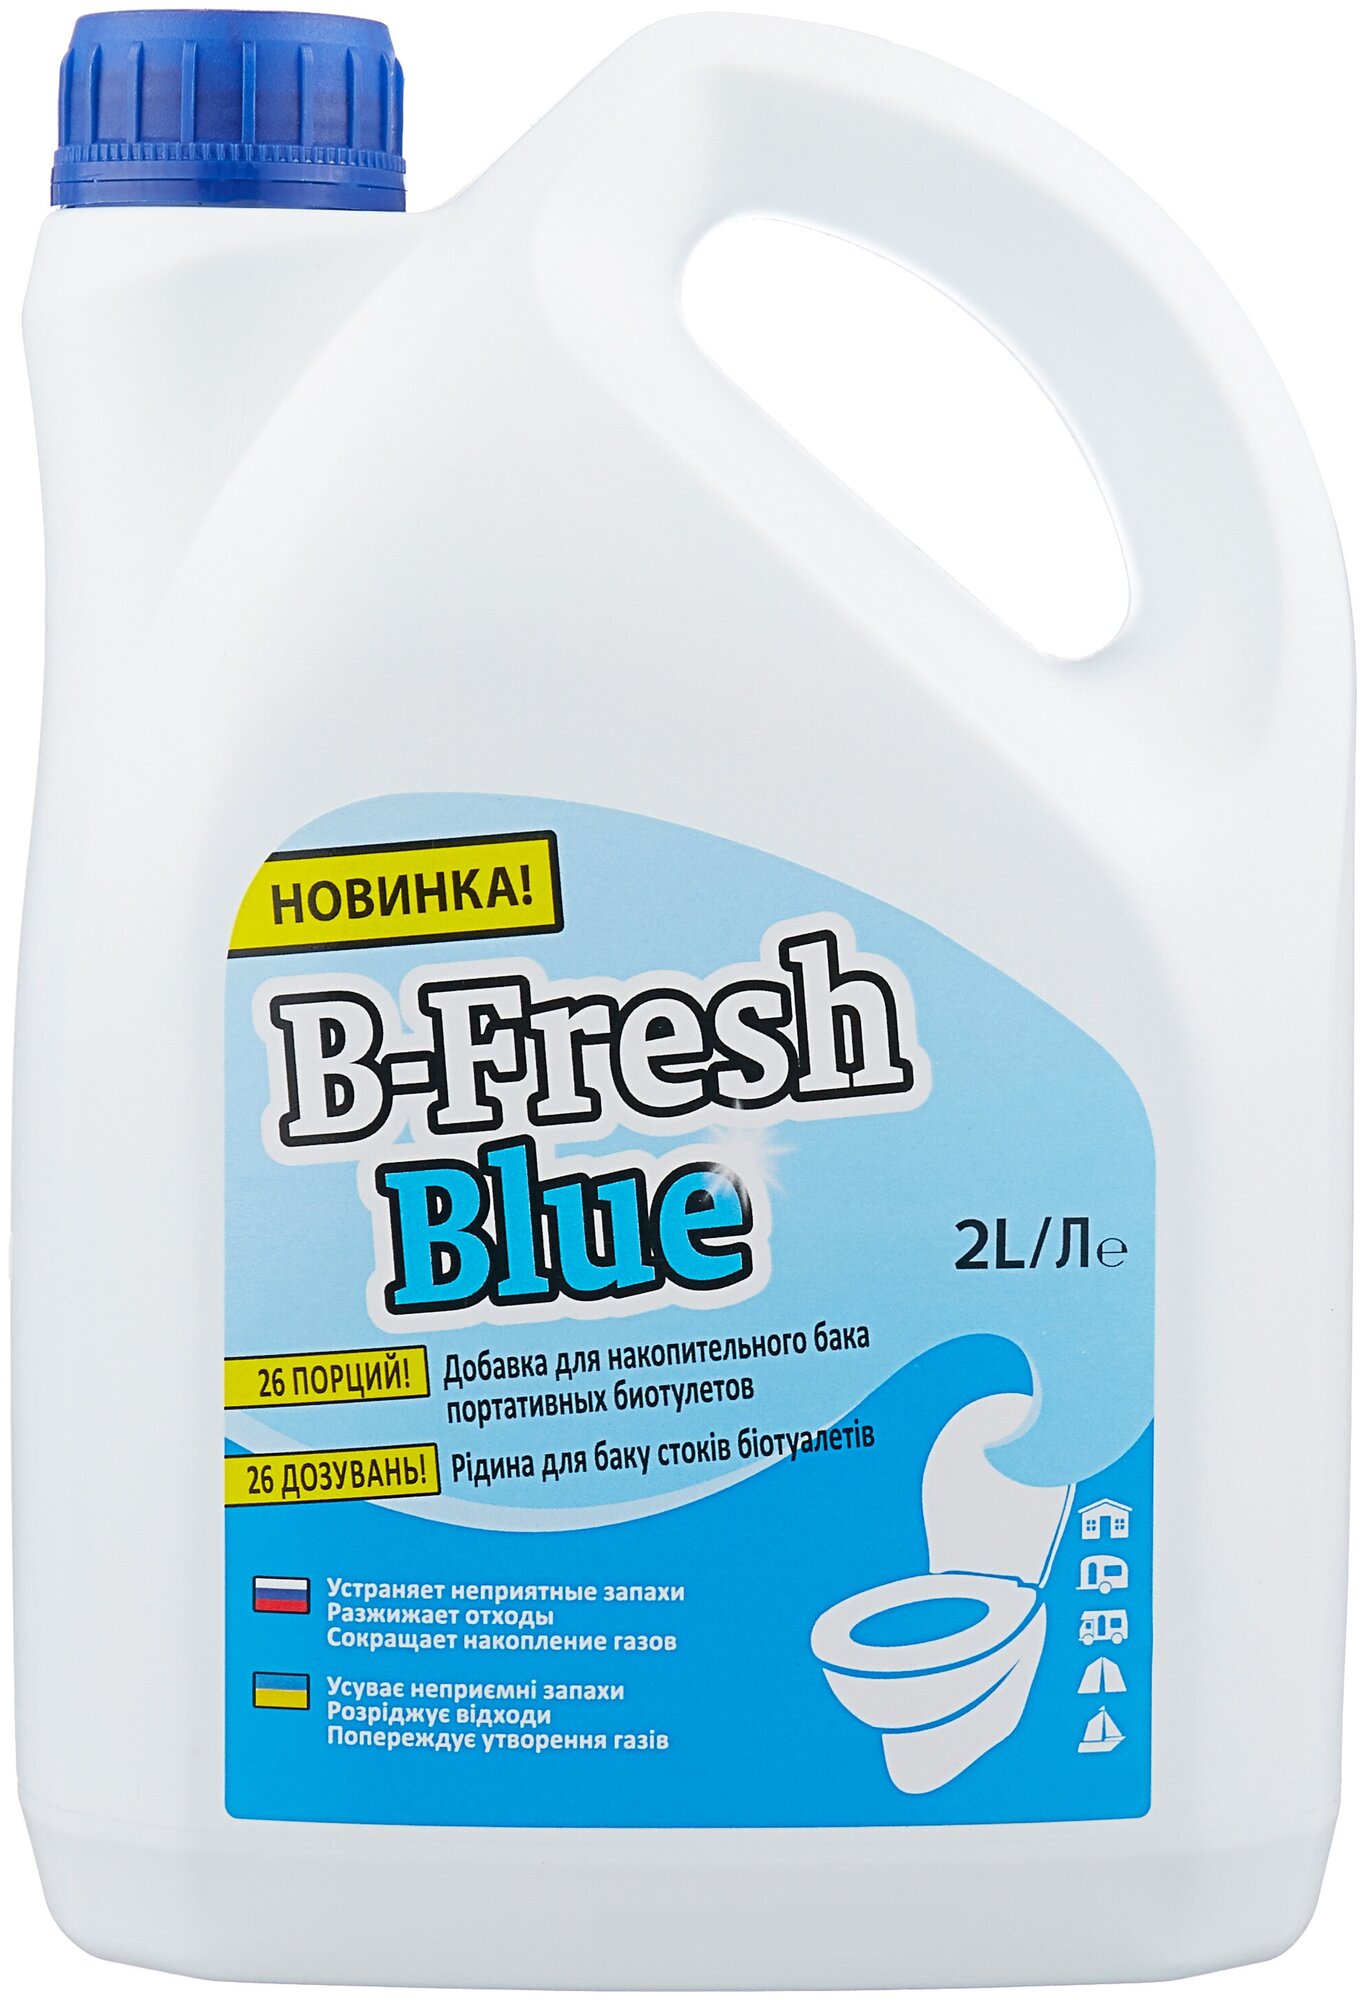 Thetford Добавка для накопительного бака биотуалетов B-Fresh Blue 2 л